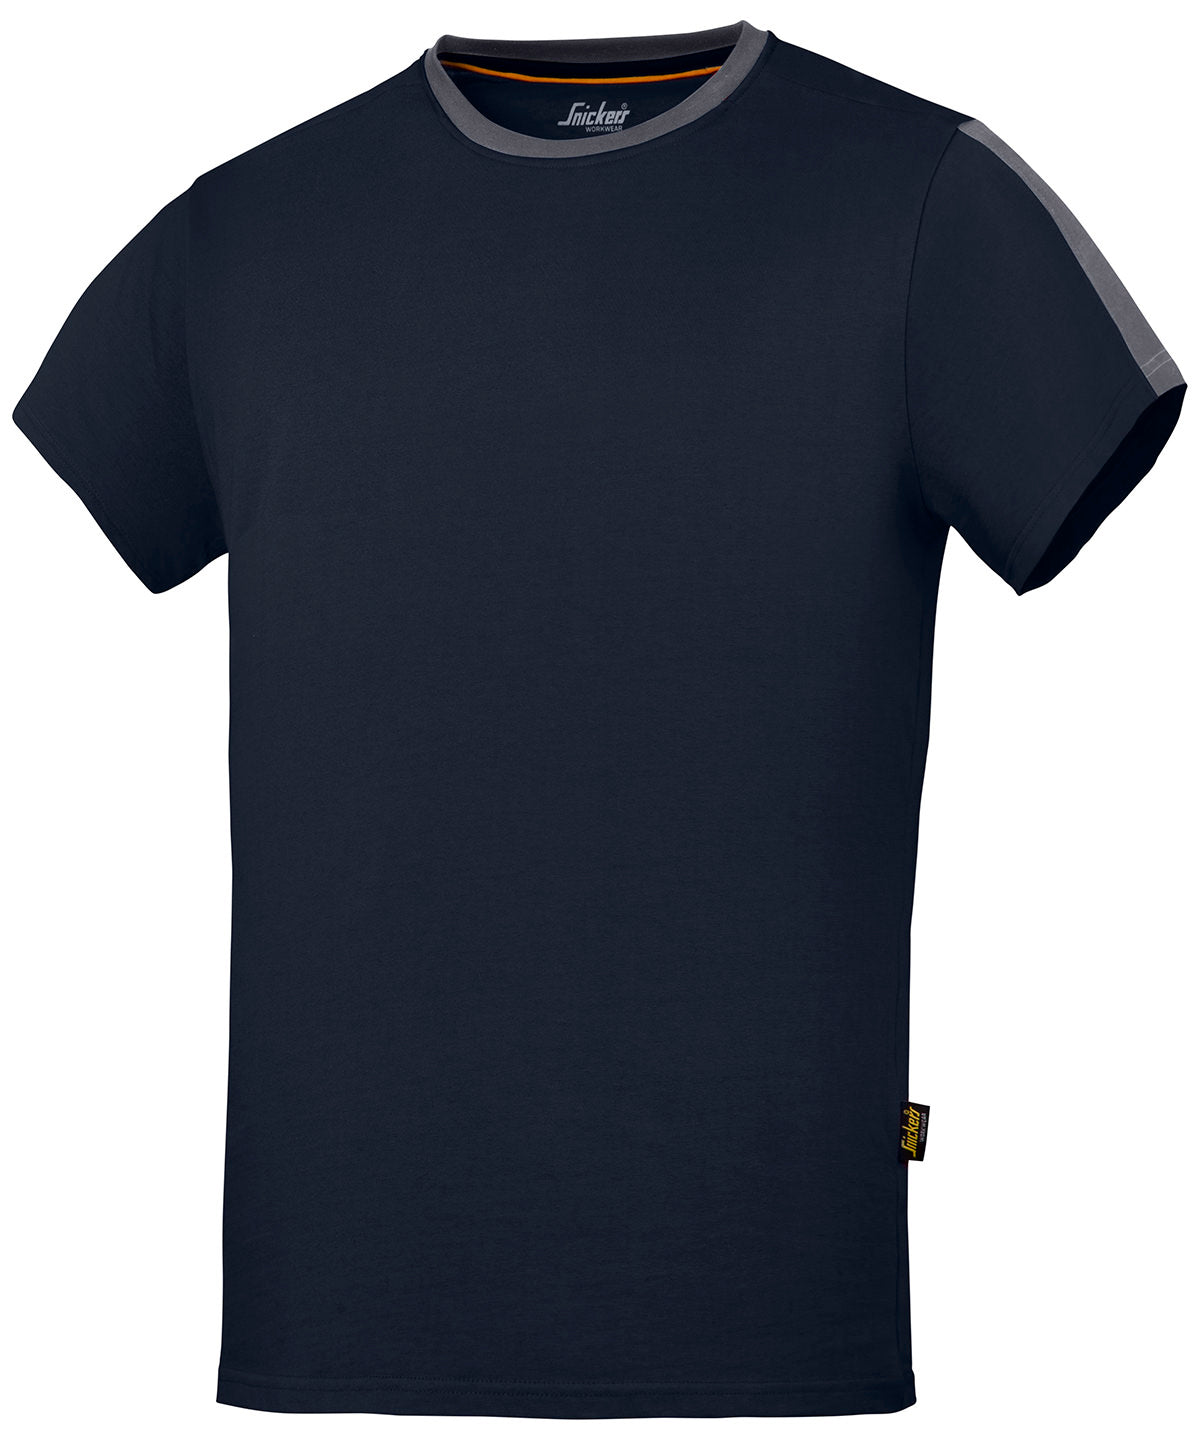 Stuttermabolir - AllroundWork T-shirt (2518)